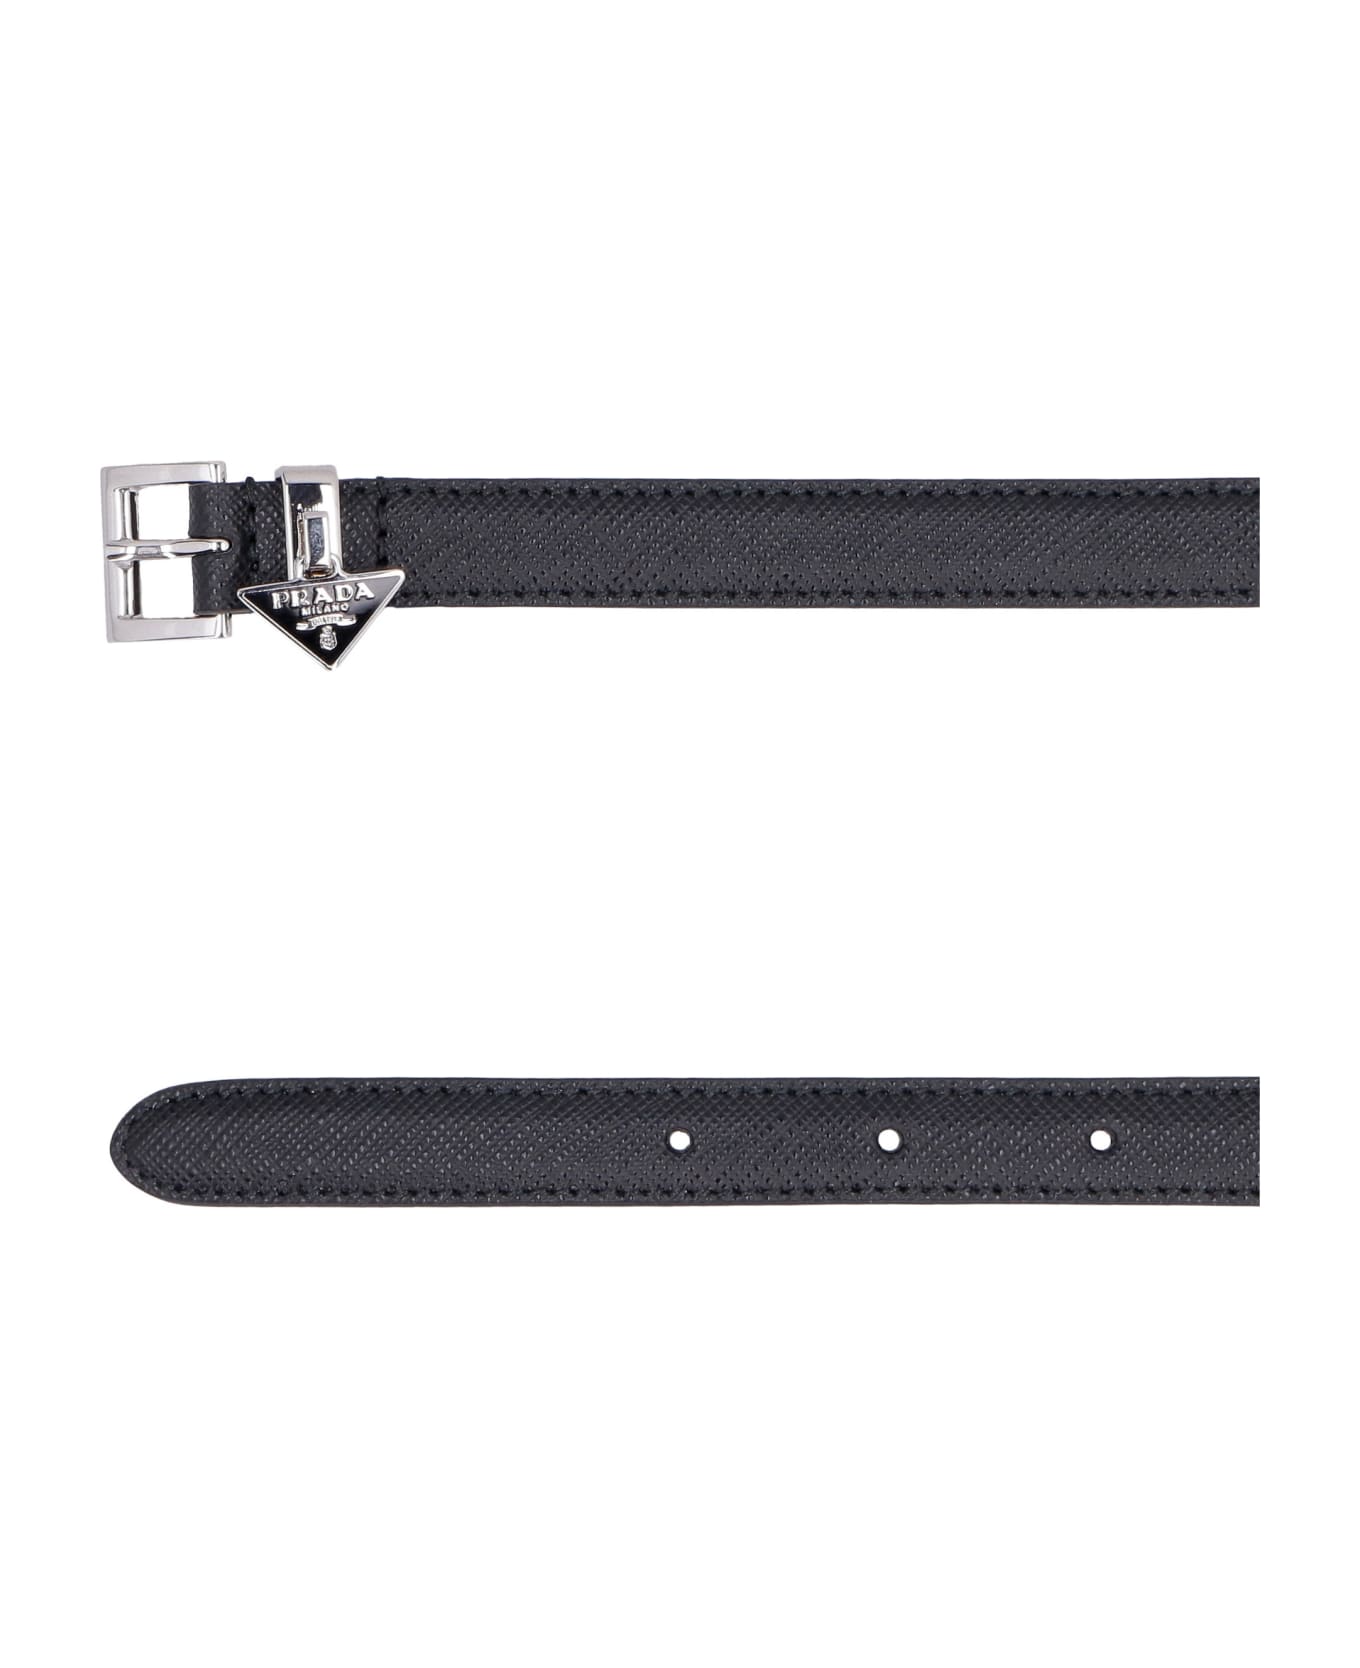 Prada Saffiano Print Leather Belt - Nero 1